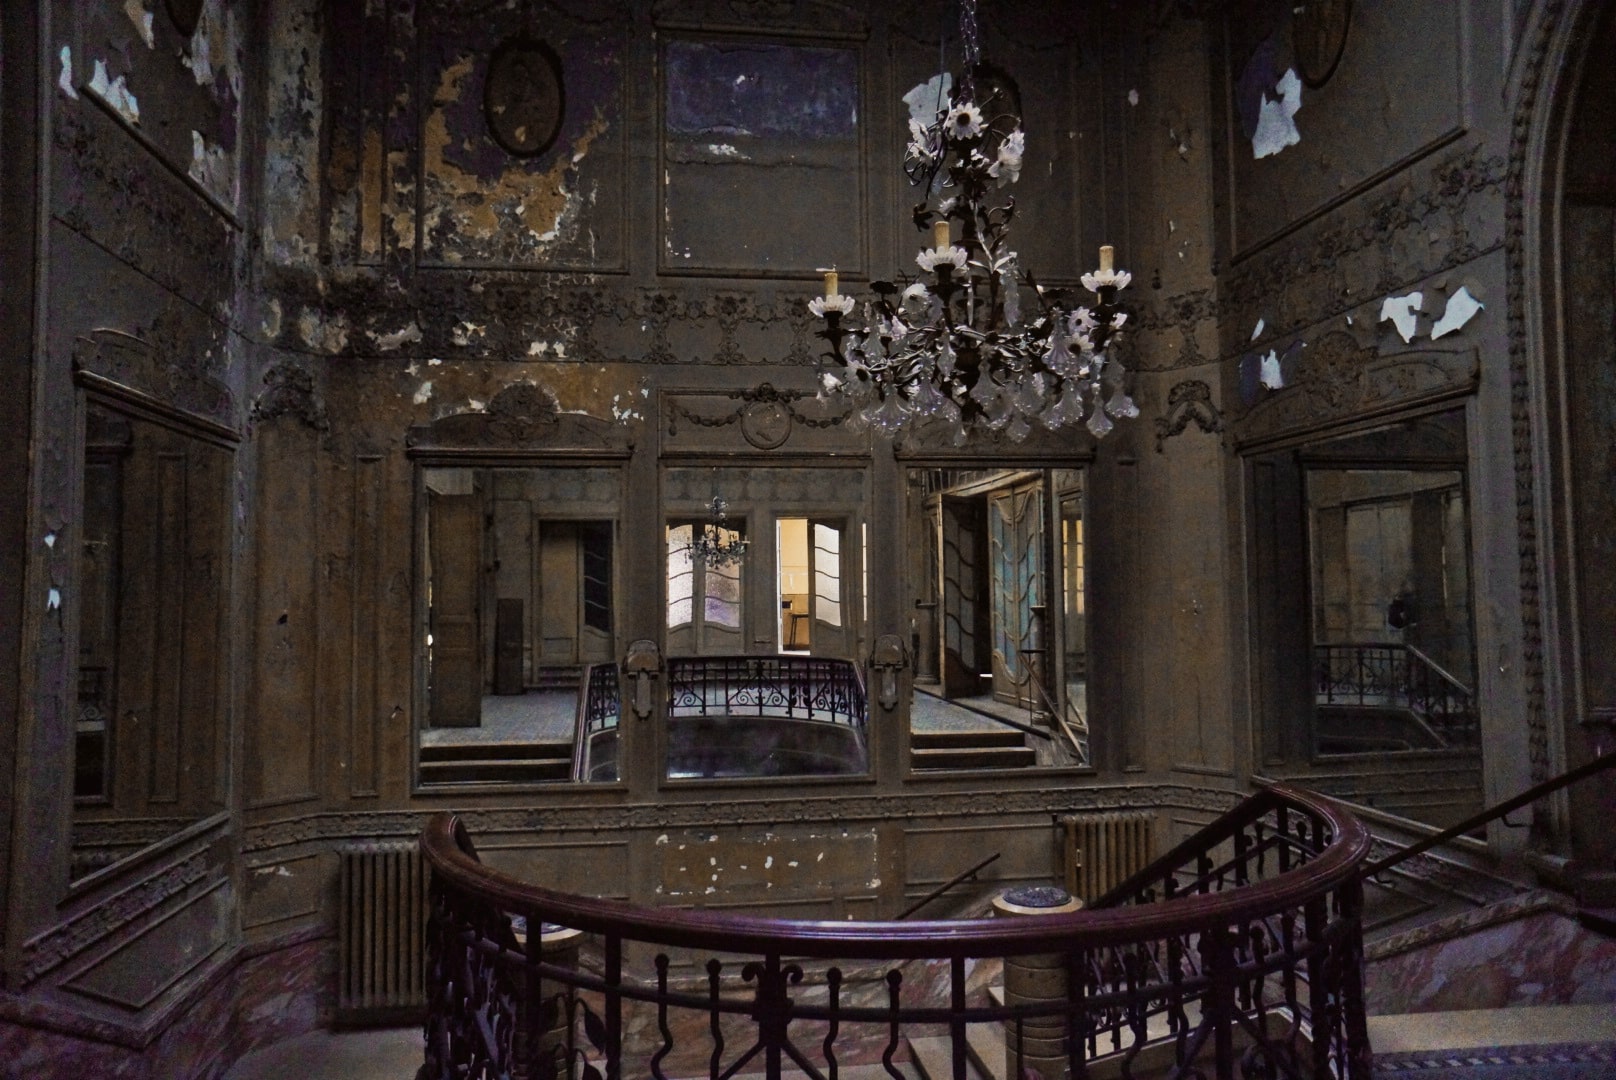 aegidium theatre abandonné lustre salle renaissance italienne architecture bruxelles